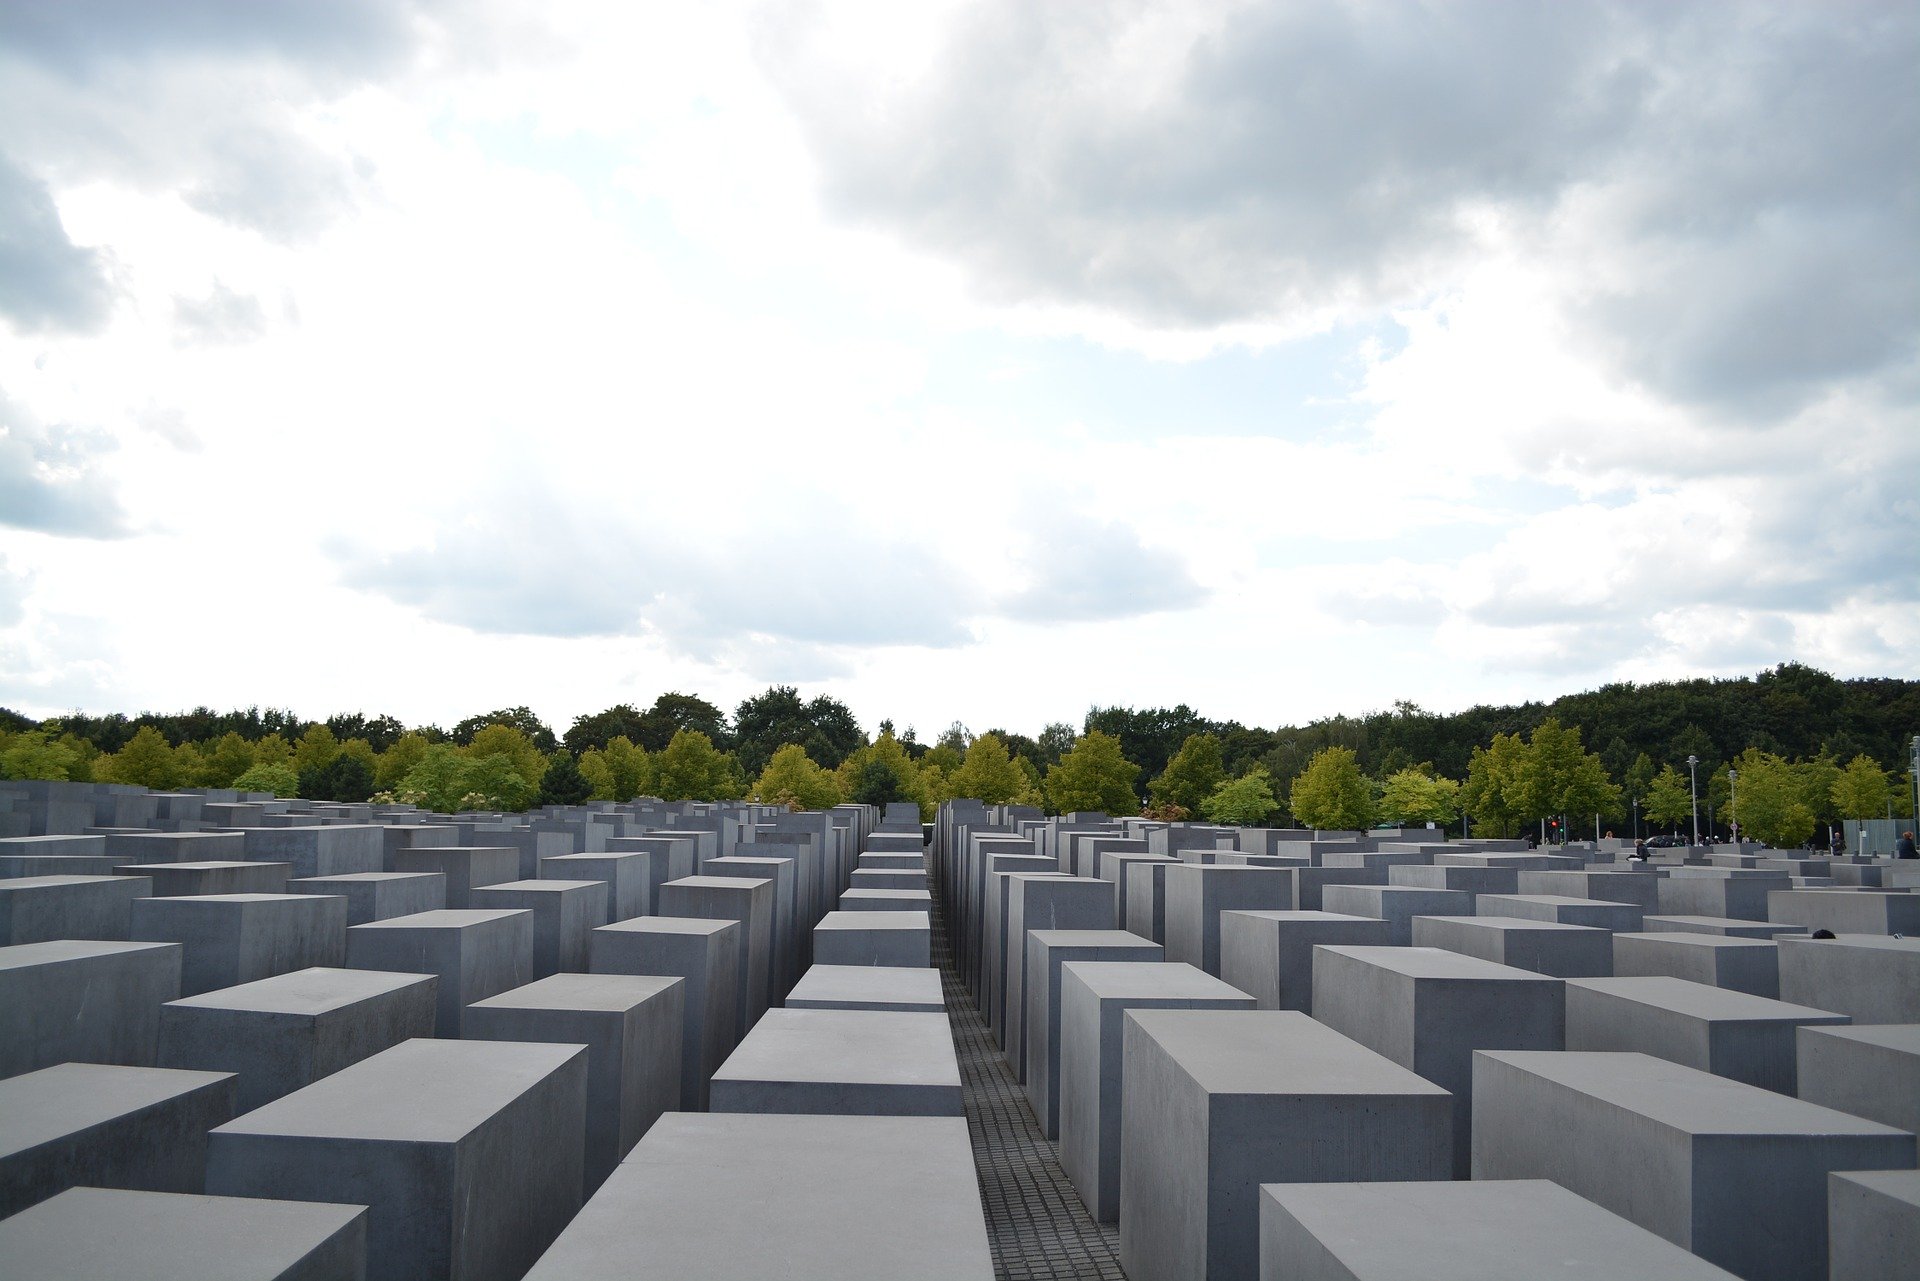 Denkmal in Berlin für die ermordeten Juden Europas